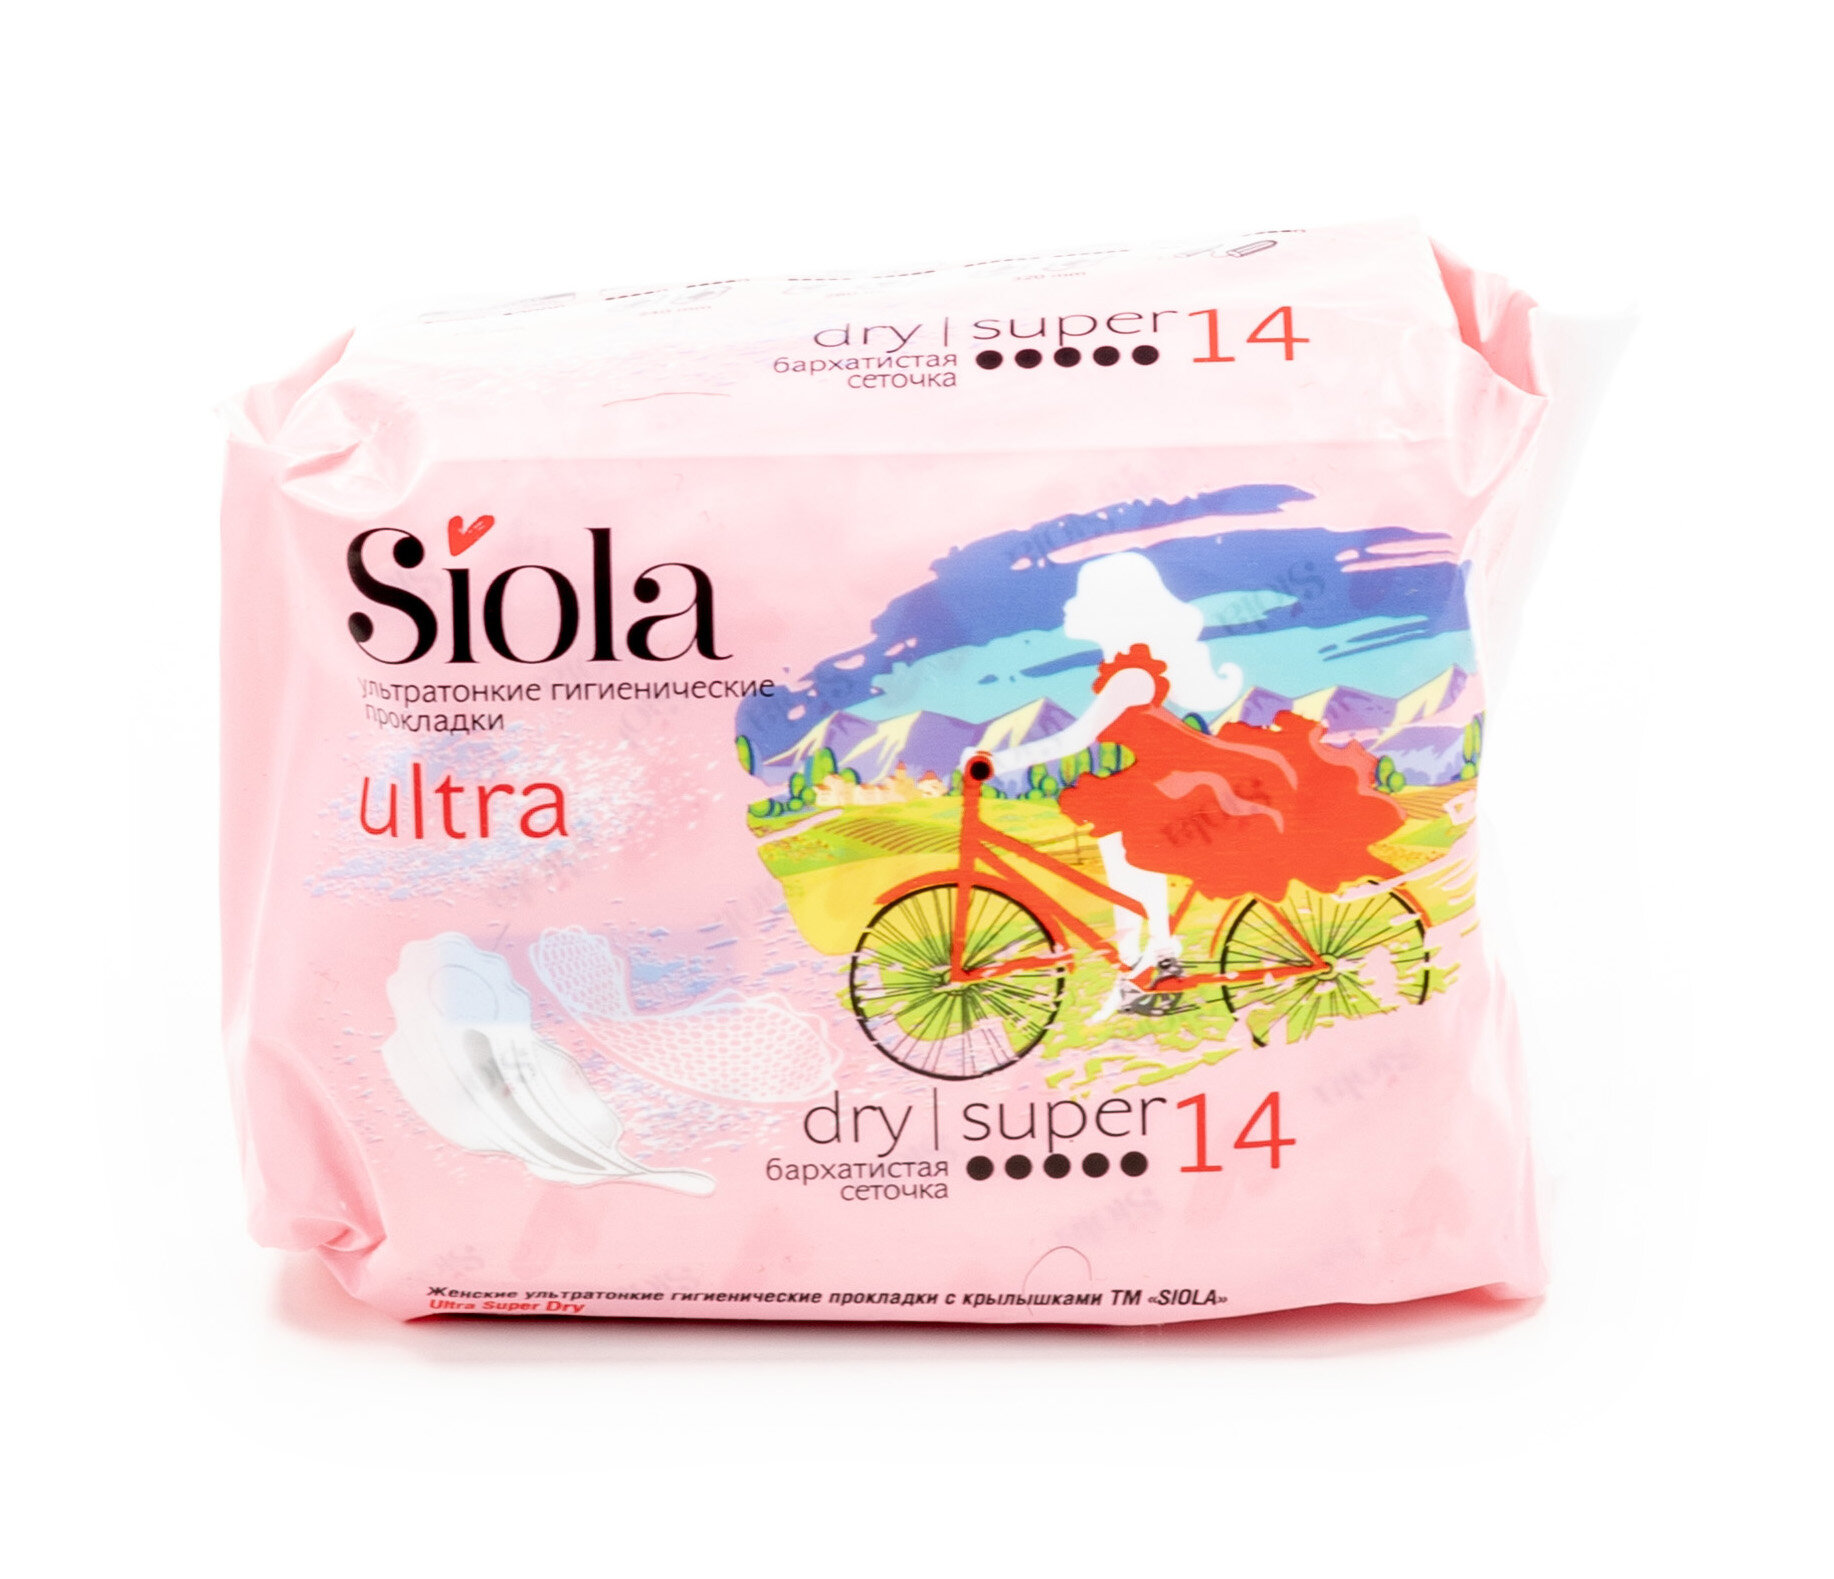 Siola / Сиола Ultra dry super Прокладки женские, гигиенические 5 капель, ультратонкие с крылышками, 14шт. в упаковке / женская гигиена